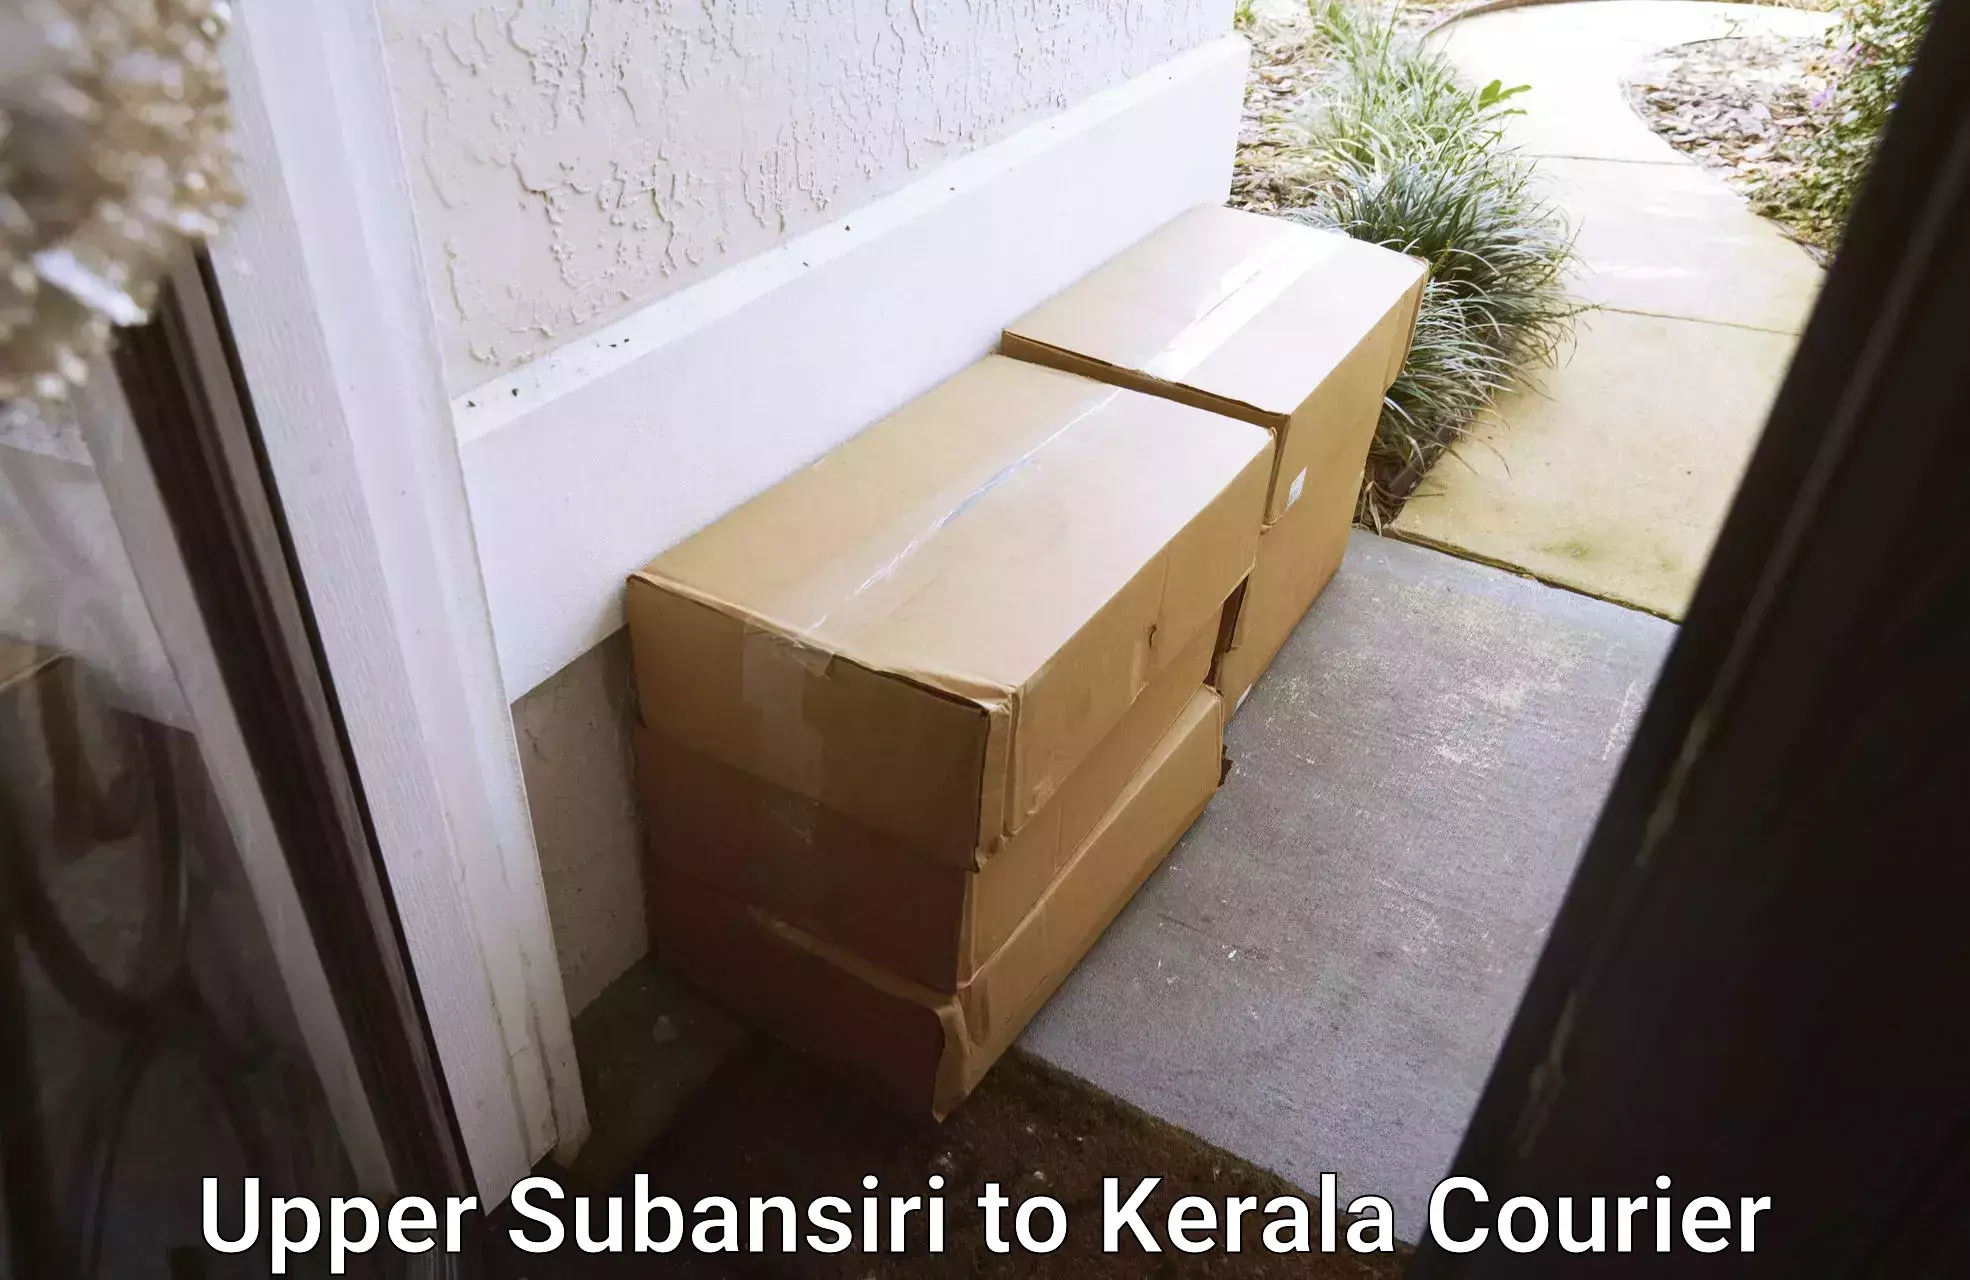 Premium courier solutions Upper Subansiri to Trivandrum